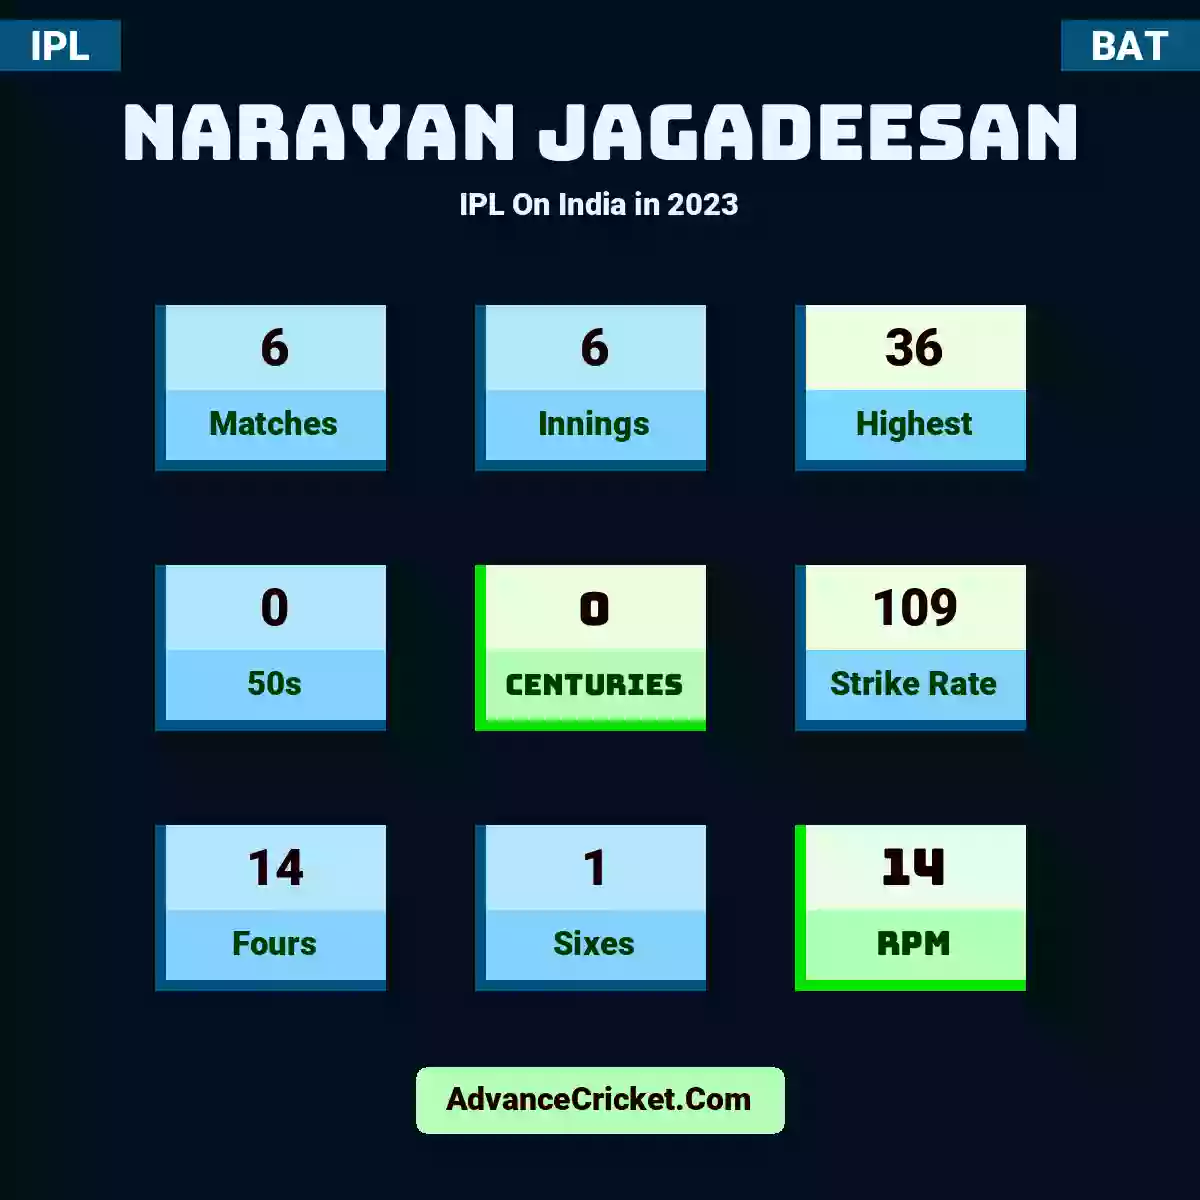 Narayan Jagadeesan IPL  On India in 2023, Narayan Jagadeesan played 6 matches, scored 36 runs as highest, 0 half-centuries, and 0 centuries, with a strike rate of 109. N.Jagadeesan hit 14 fours and 1 sixes, with an RPM of 14.